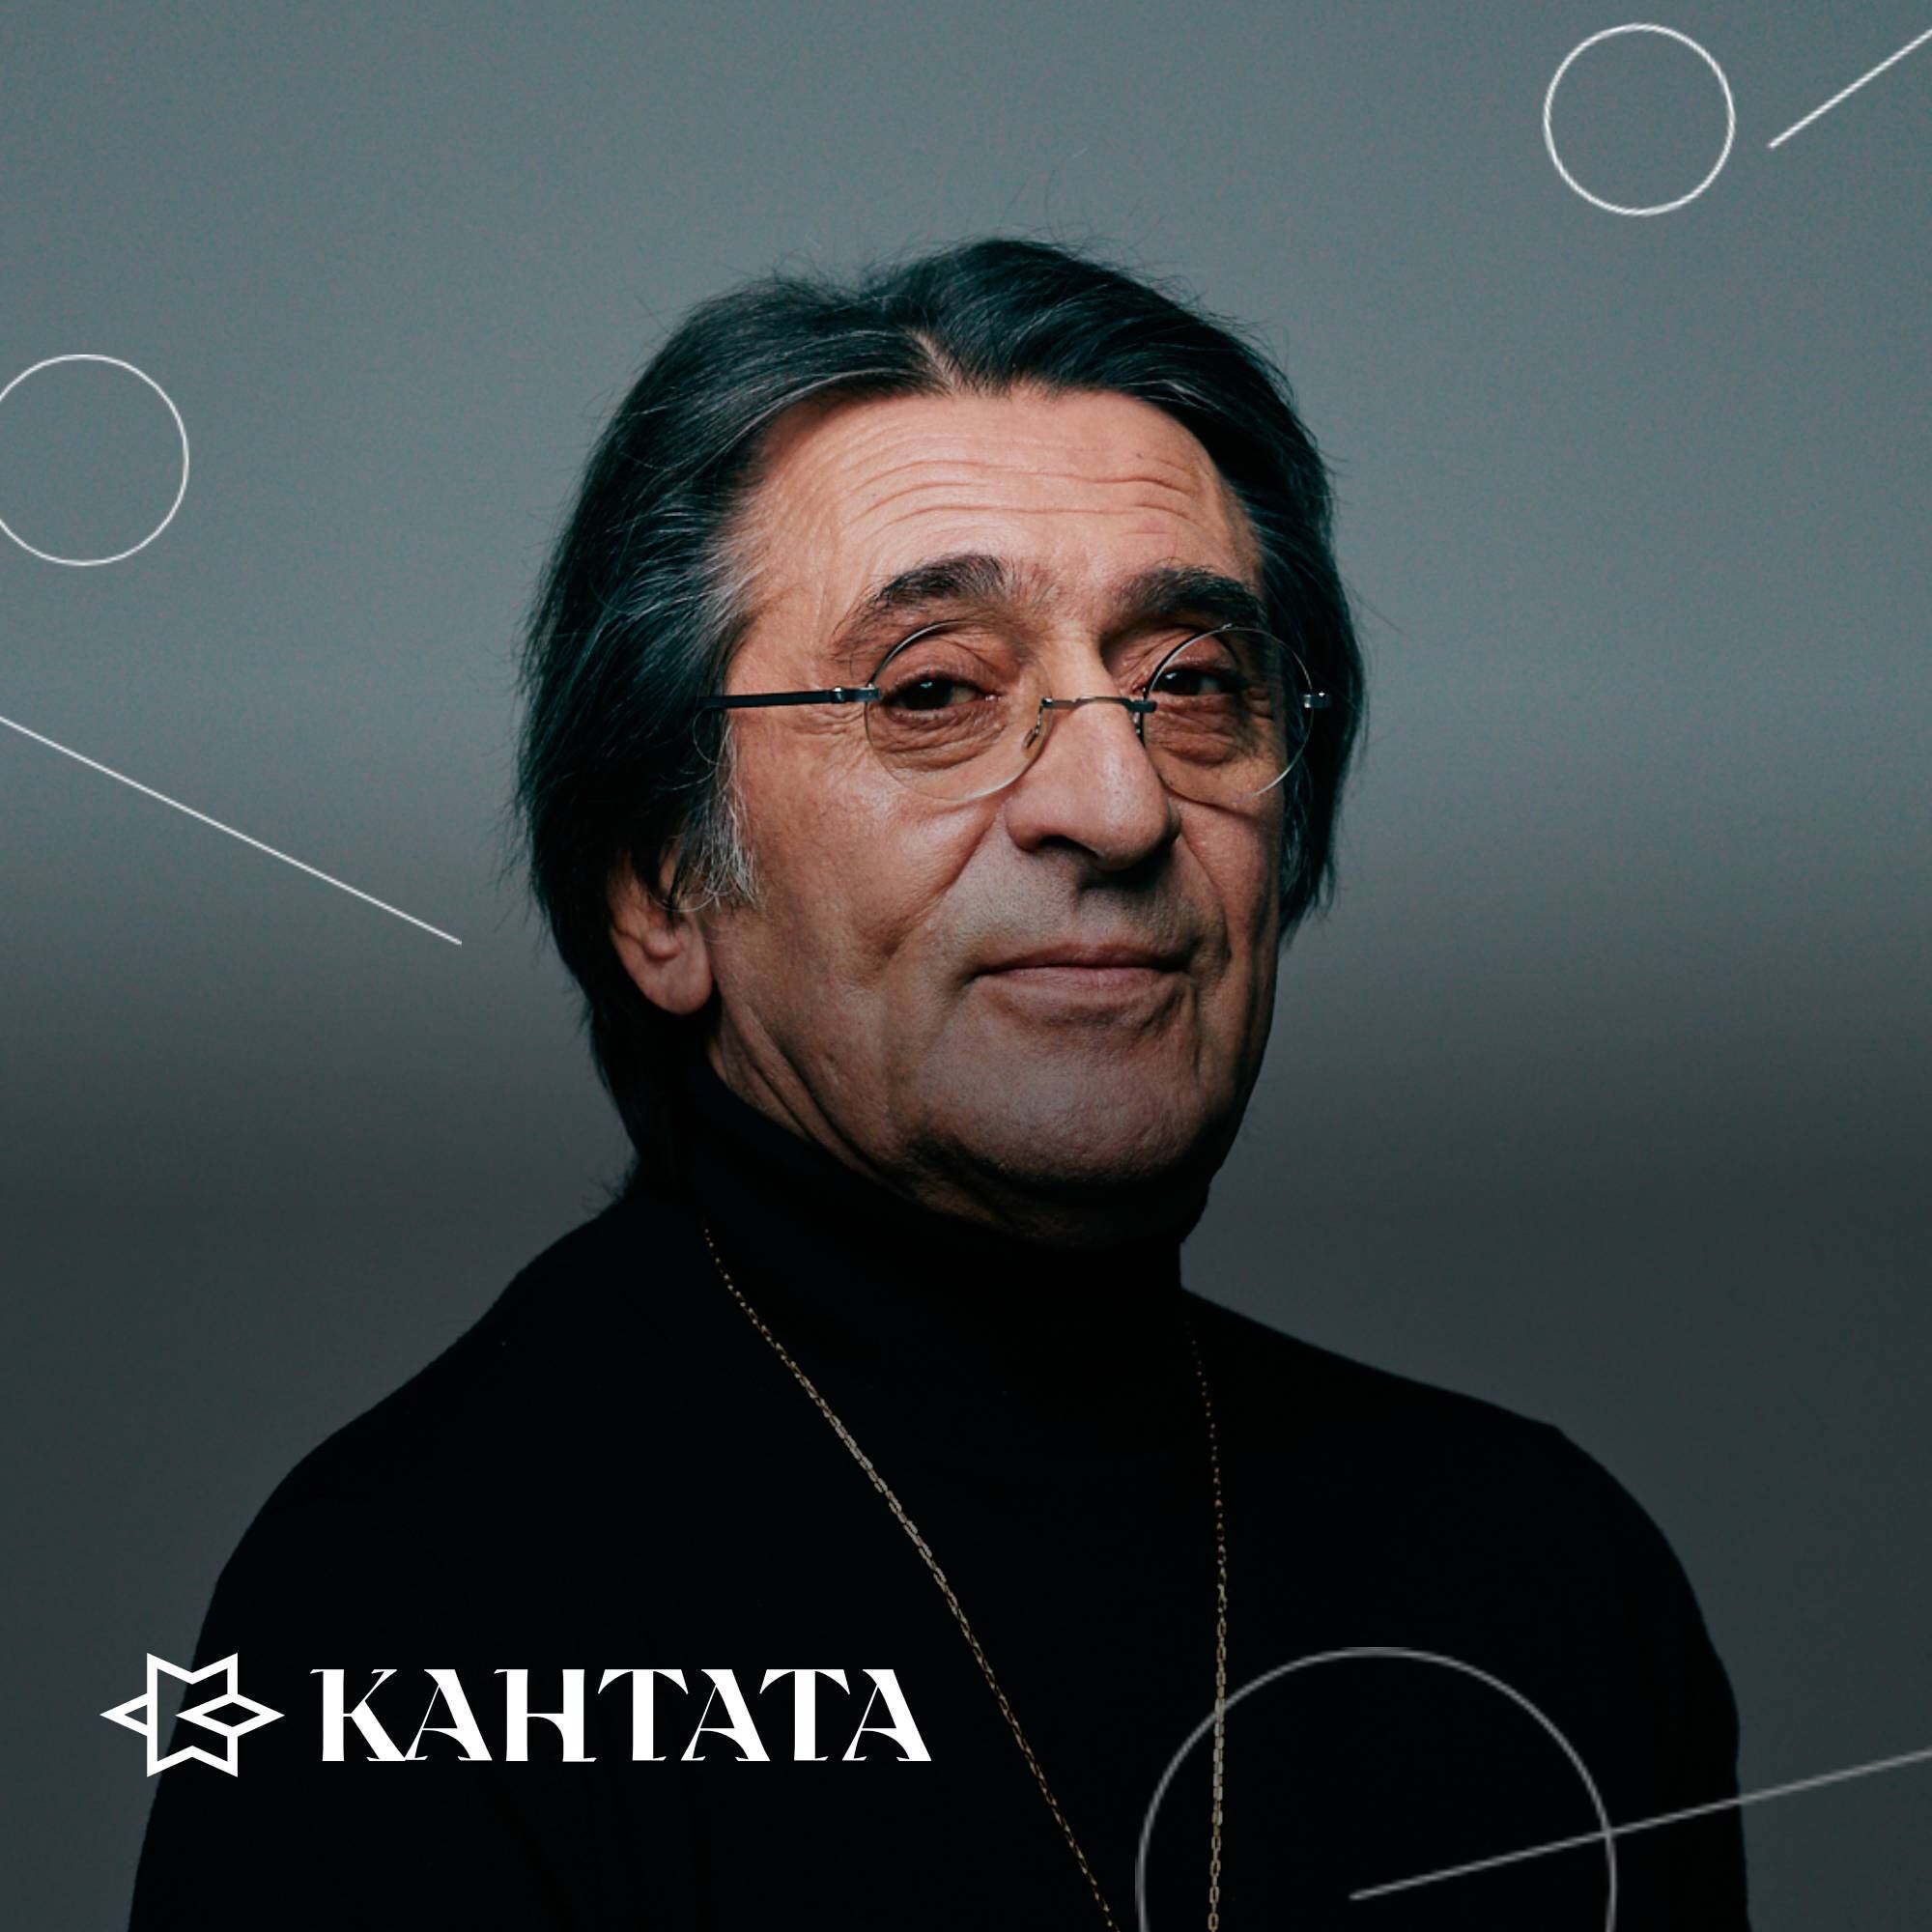 Не пропустите! 12 июня в Калининграде пройдёт творческая встреча Юрия Башмета для всех желающих